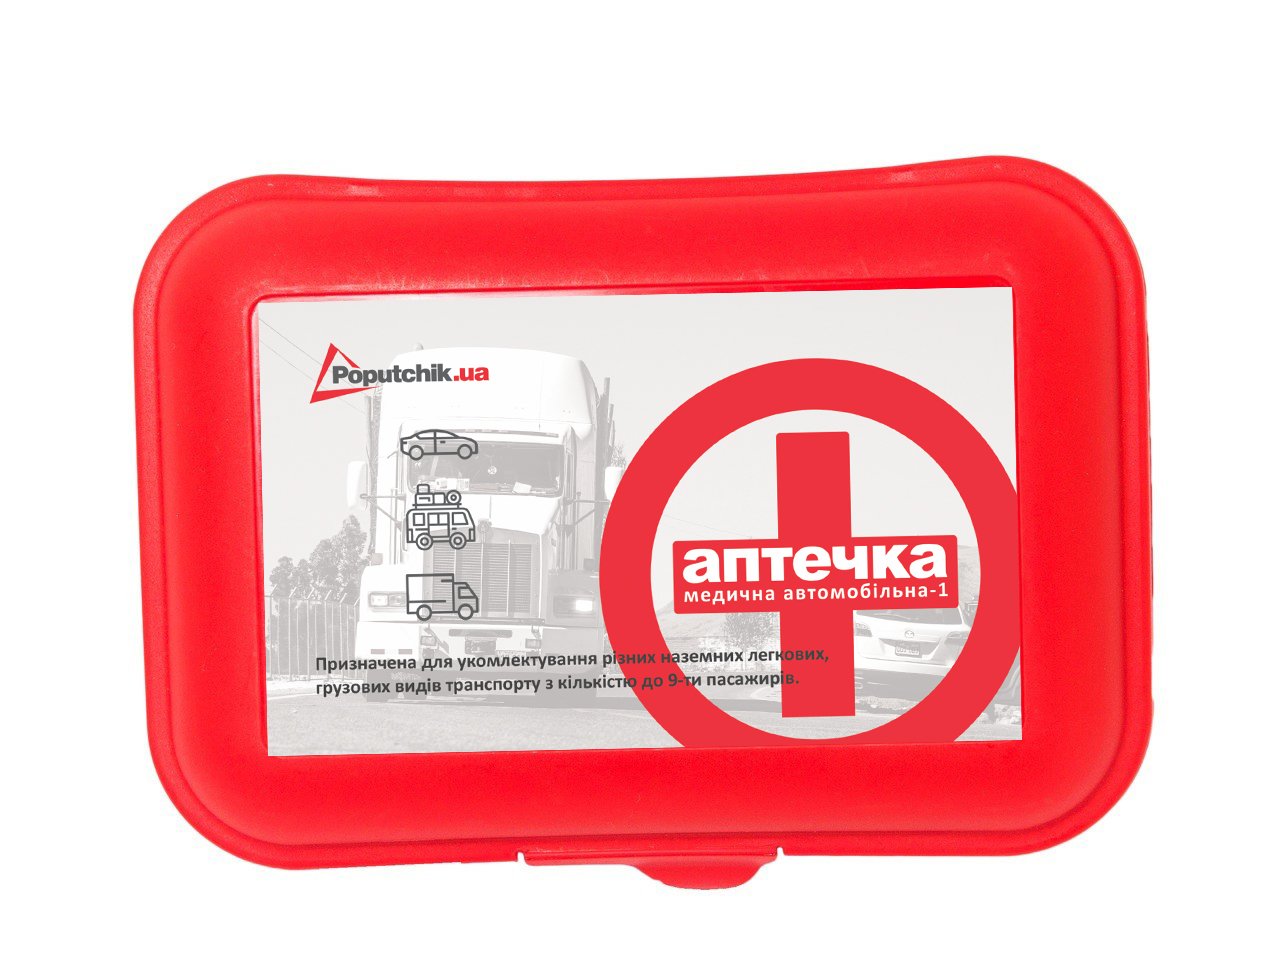 Аптечка медична автомобільна-1 Poputchik згідно ТУ (02-027-П) пластиковий футляр